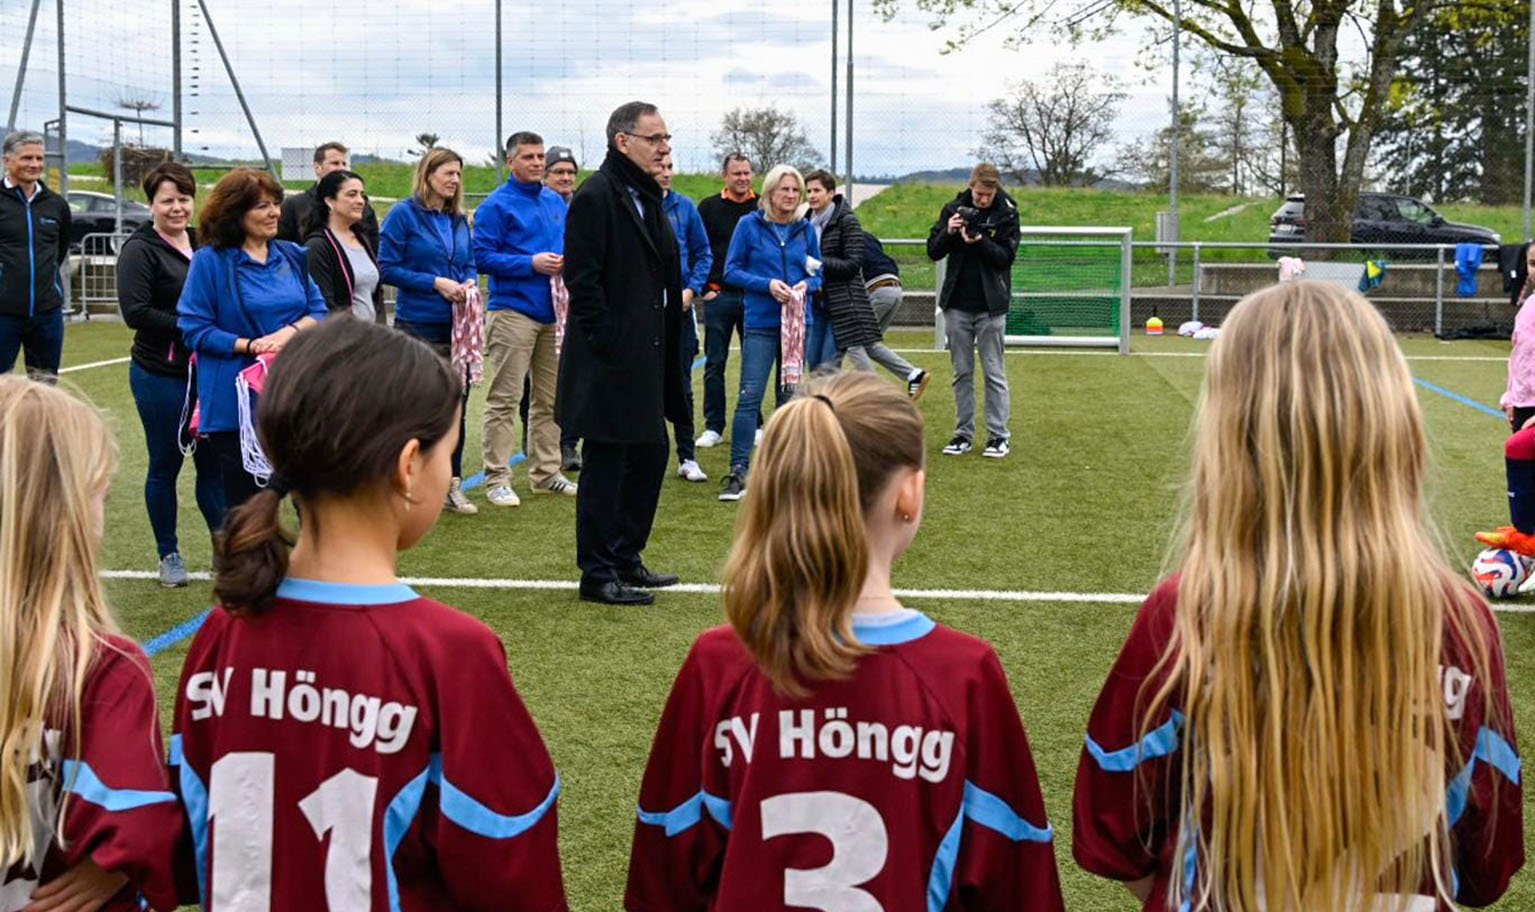 Mario Fehr steht mit den anderen Medienkonferenz-Teilnehmenden auf dem Fussballplatz in Höngg und be...